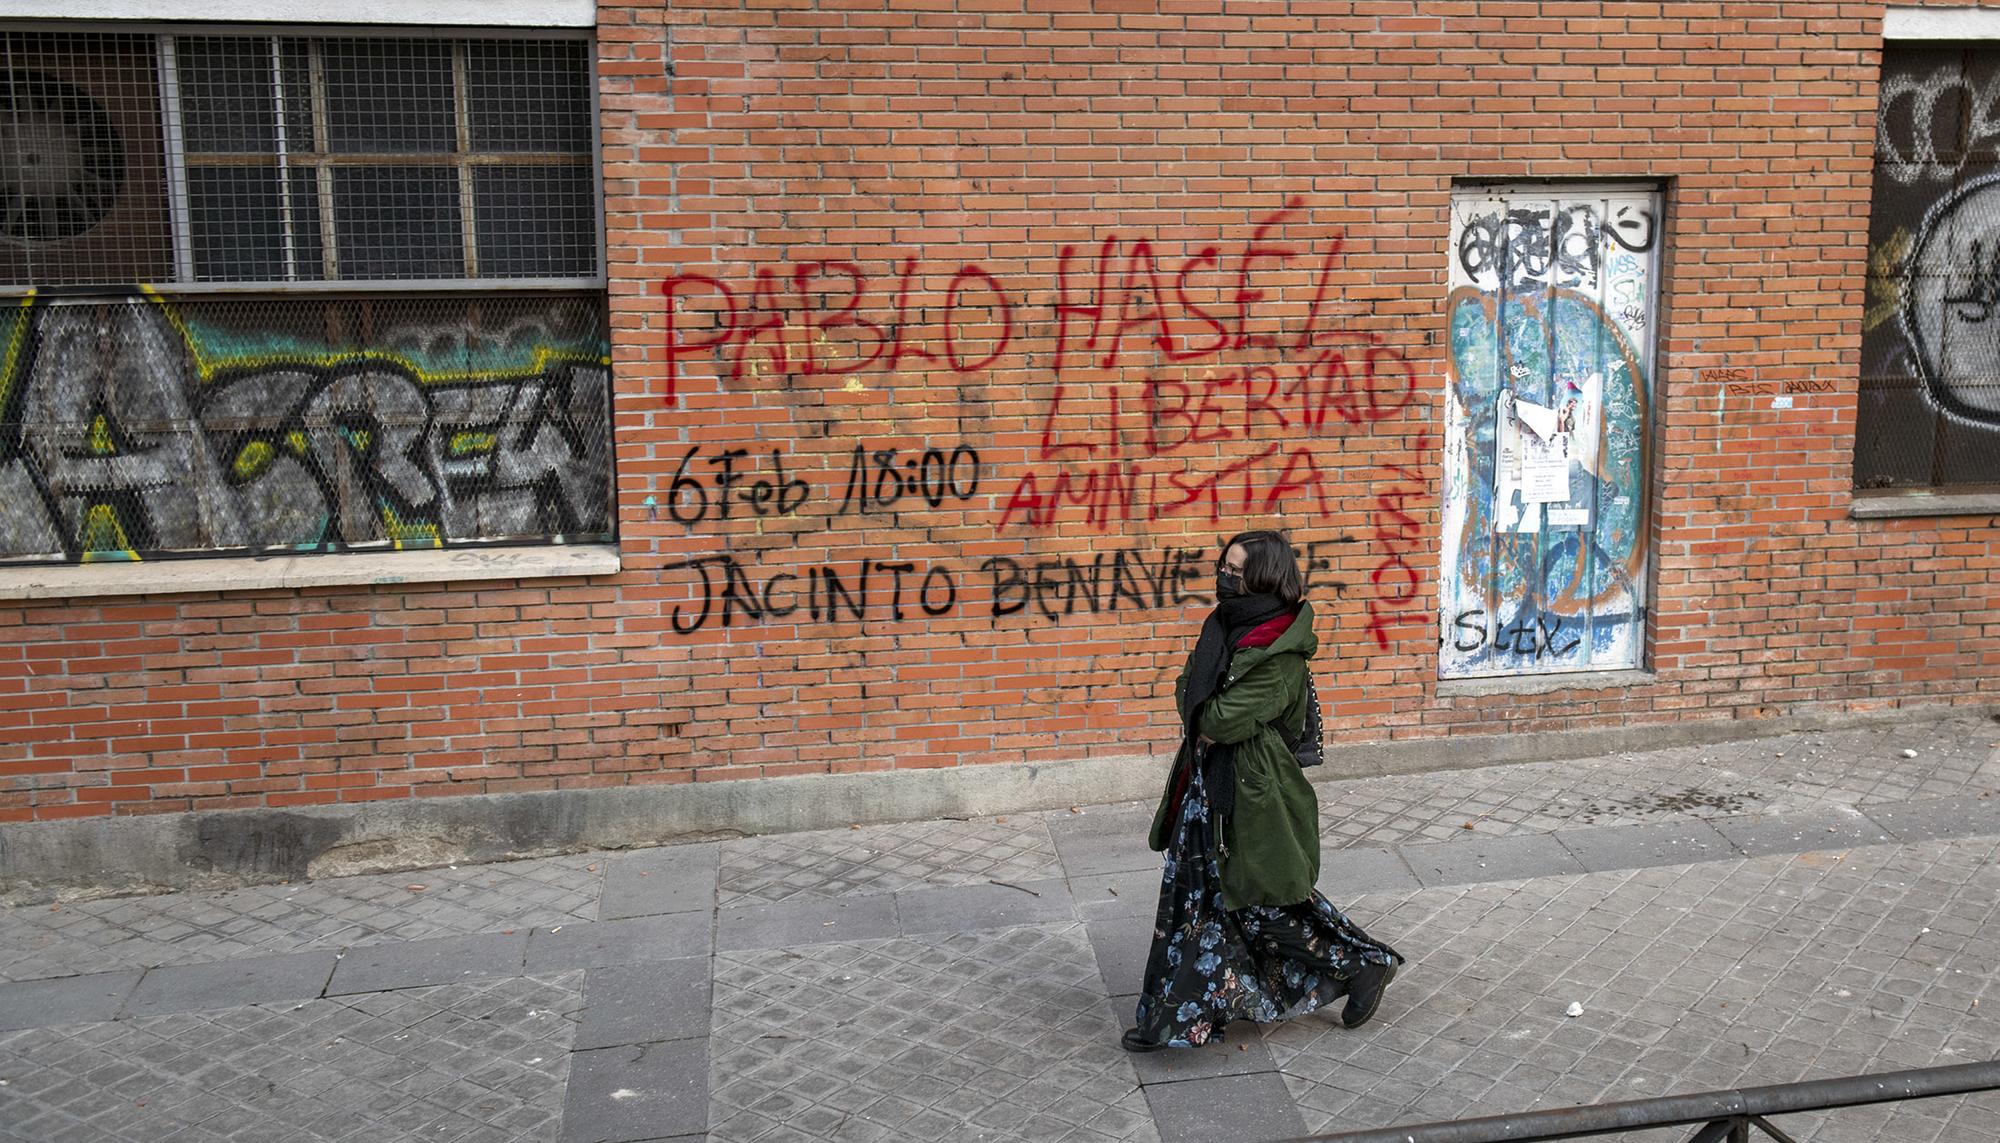 Pintada en Madrid convocando a una concentración en apoyo a Pablo Hasel